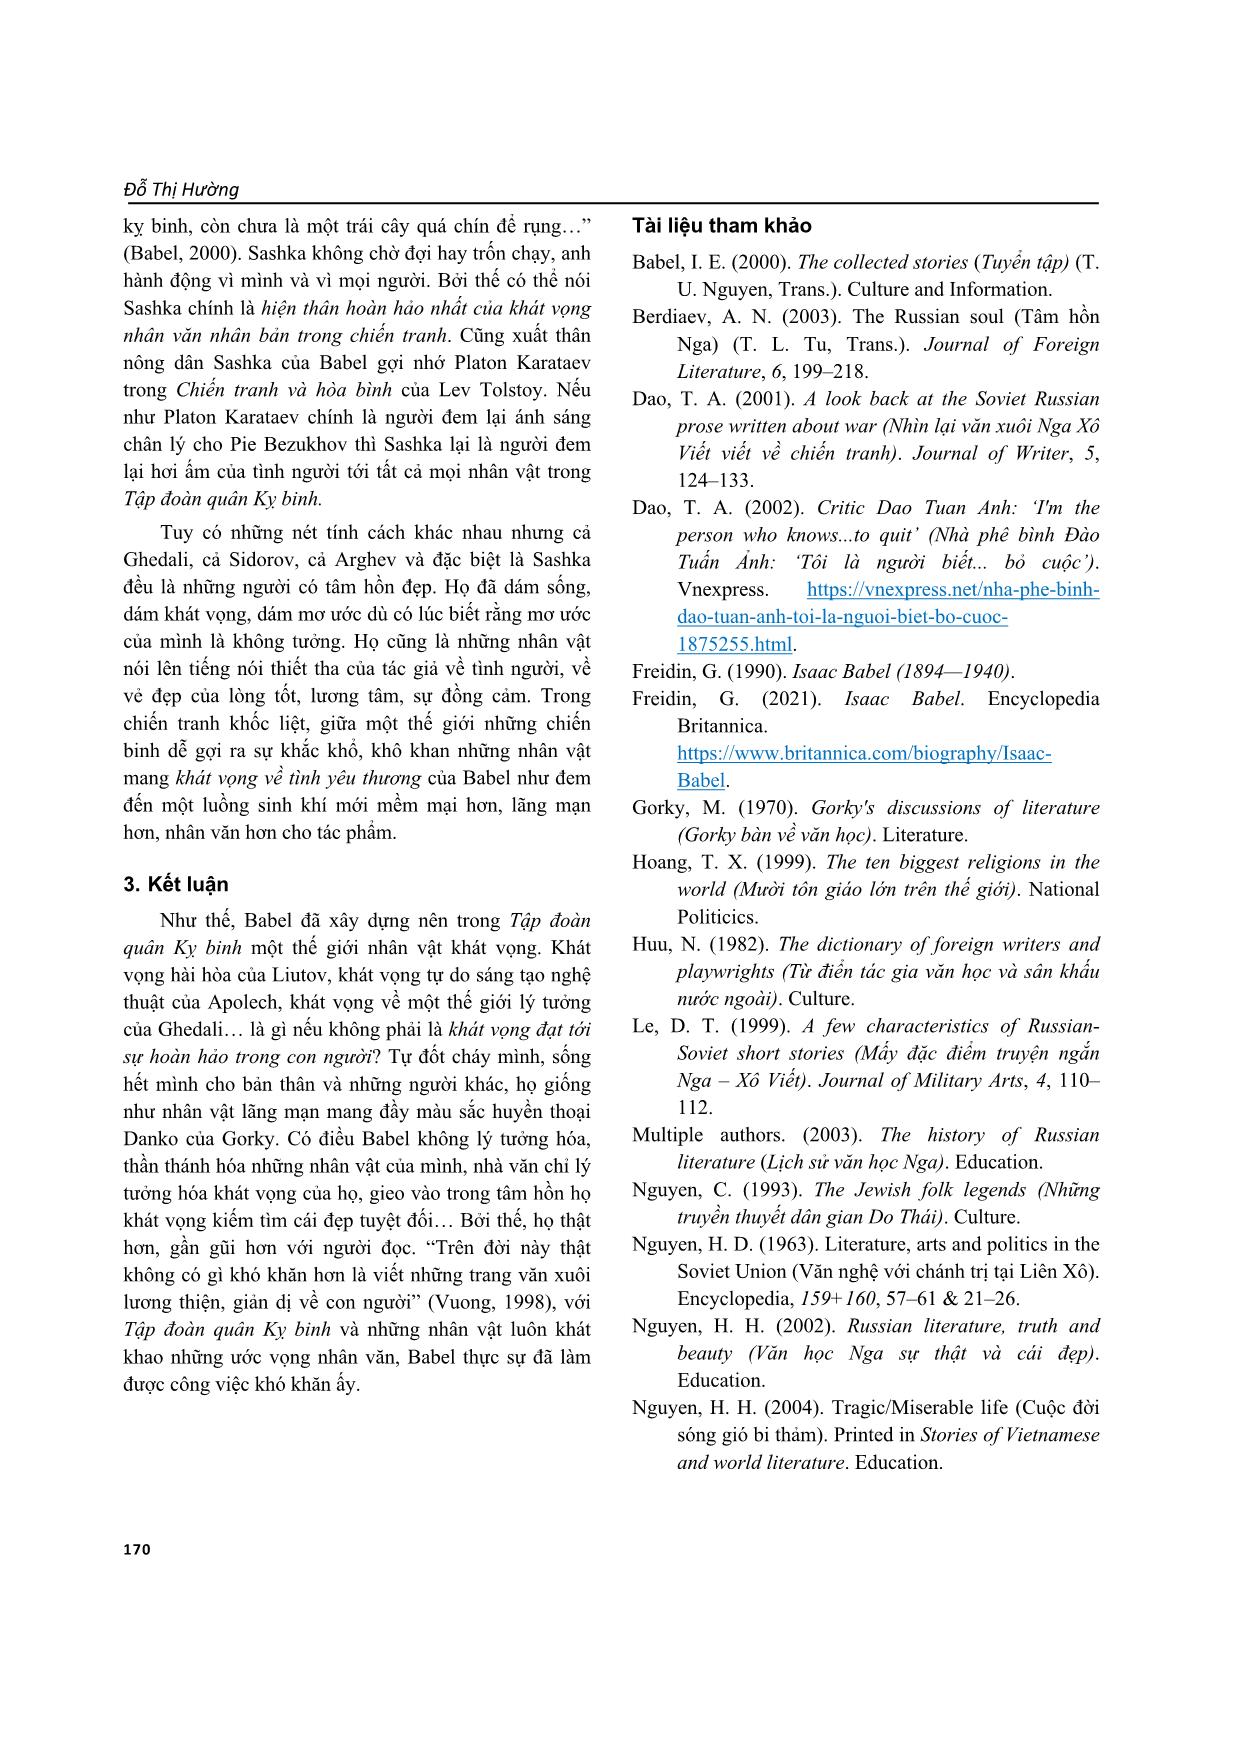 Những khát vọng nhân văn trong Tập đoàn quân Kỵ binh của Isaac Babel trang 8